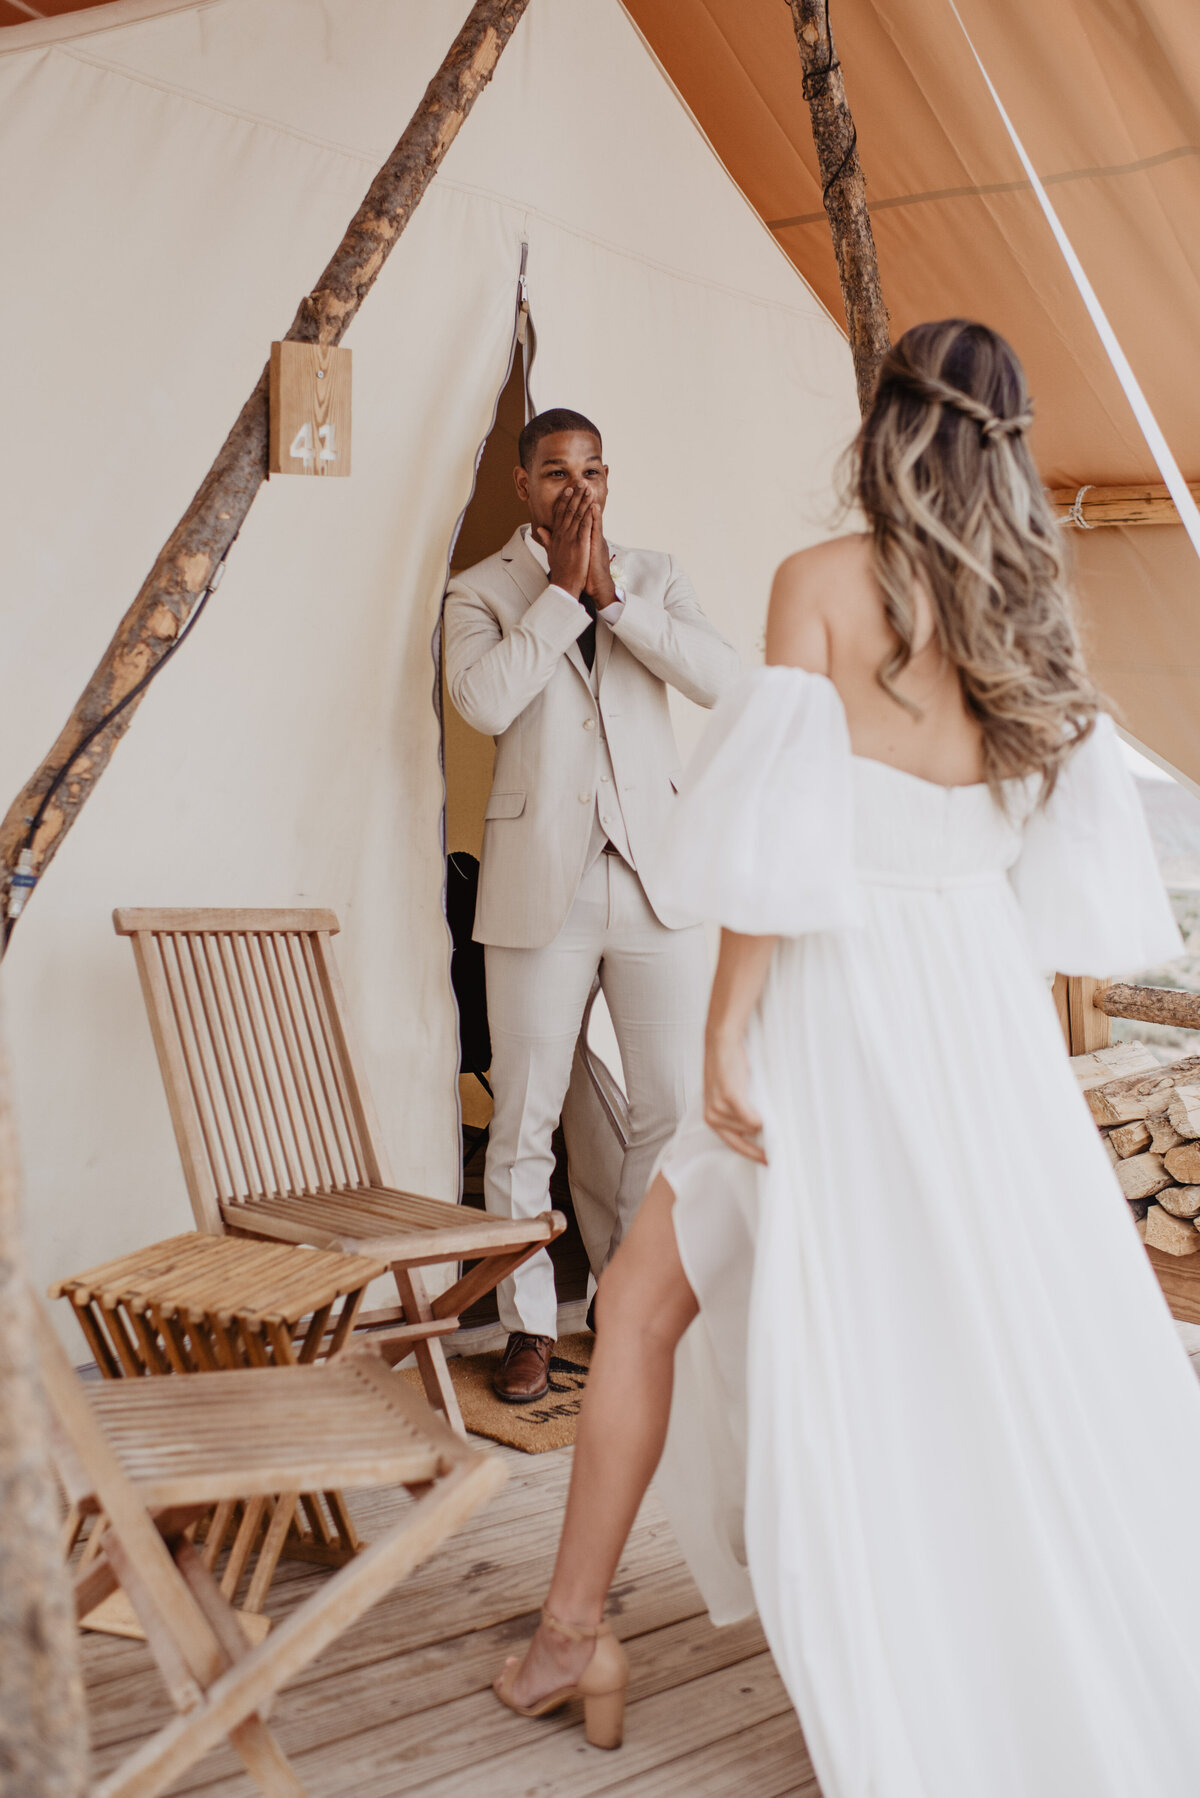 Utah Elopement Photographer captures first look between bride and groom